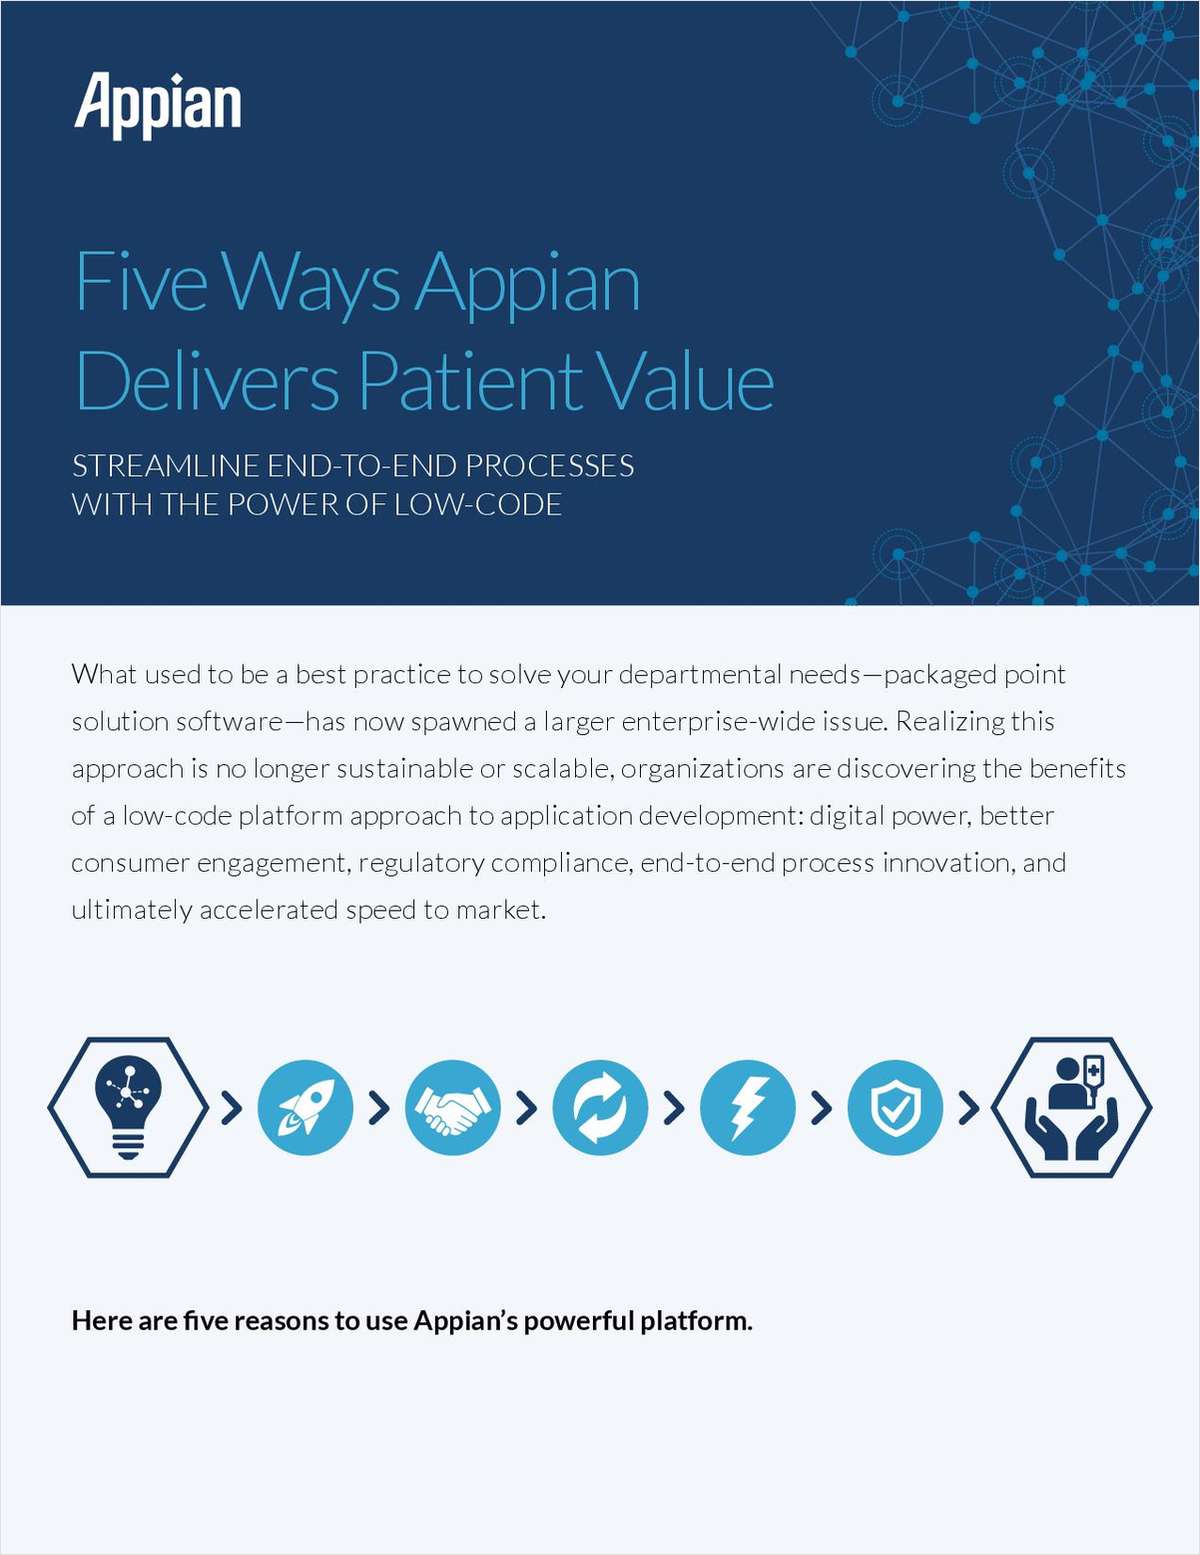 Five Ways Appian Delivers Patient Value